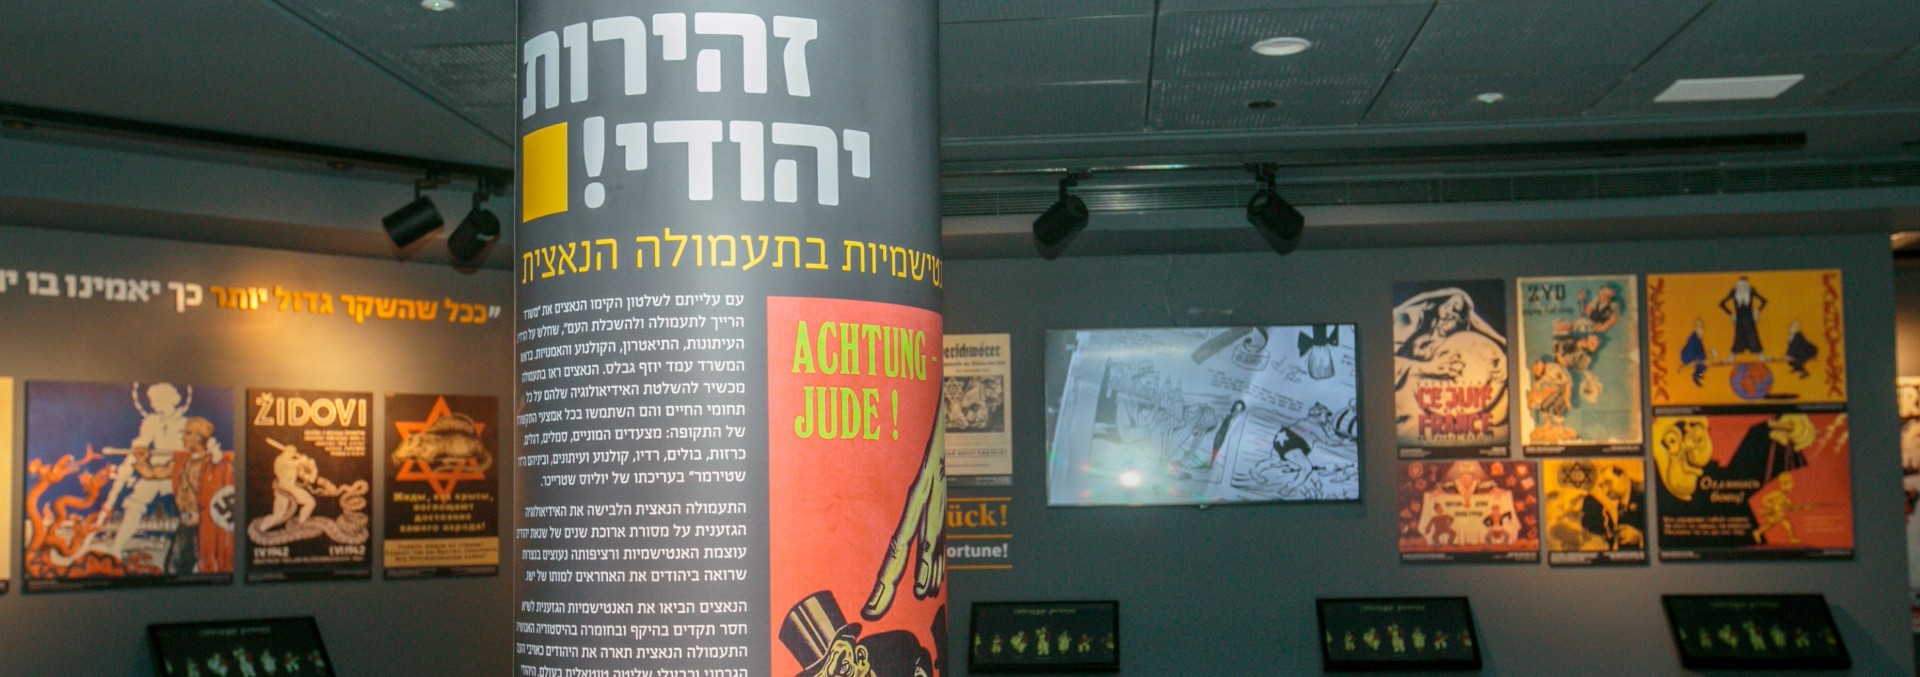 אנטישמיות בתעמולה הנאצית במייצג "תעשיית השנאה" במוזיאון משואה